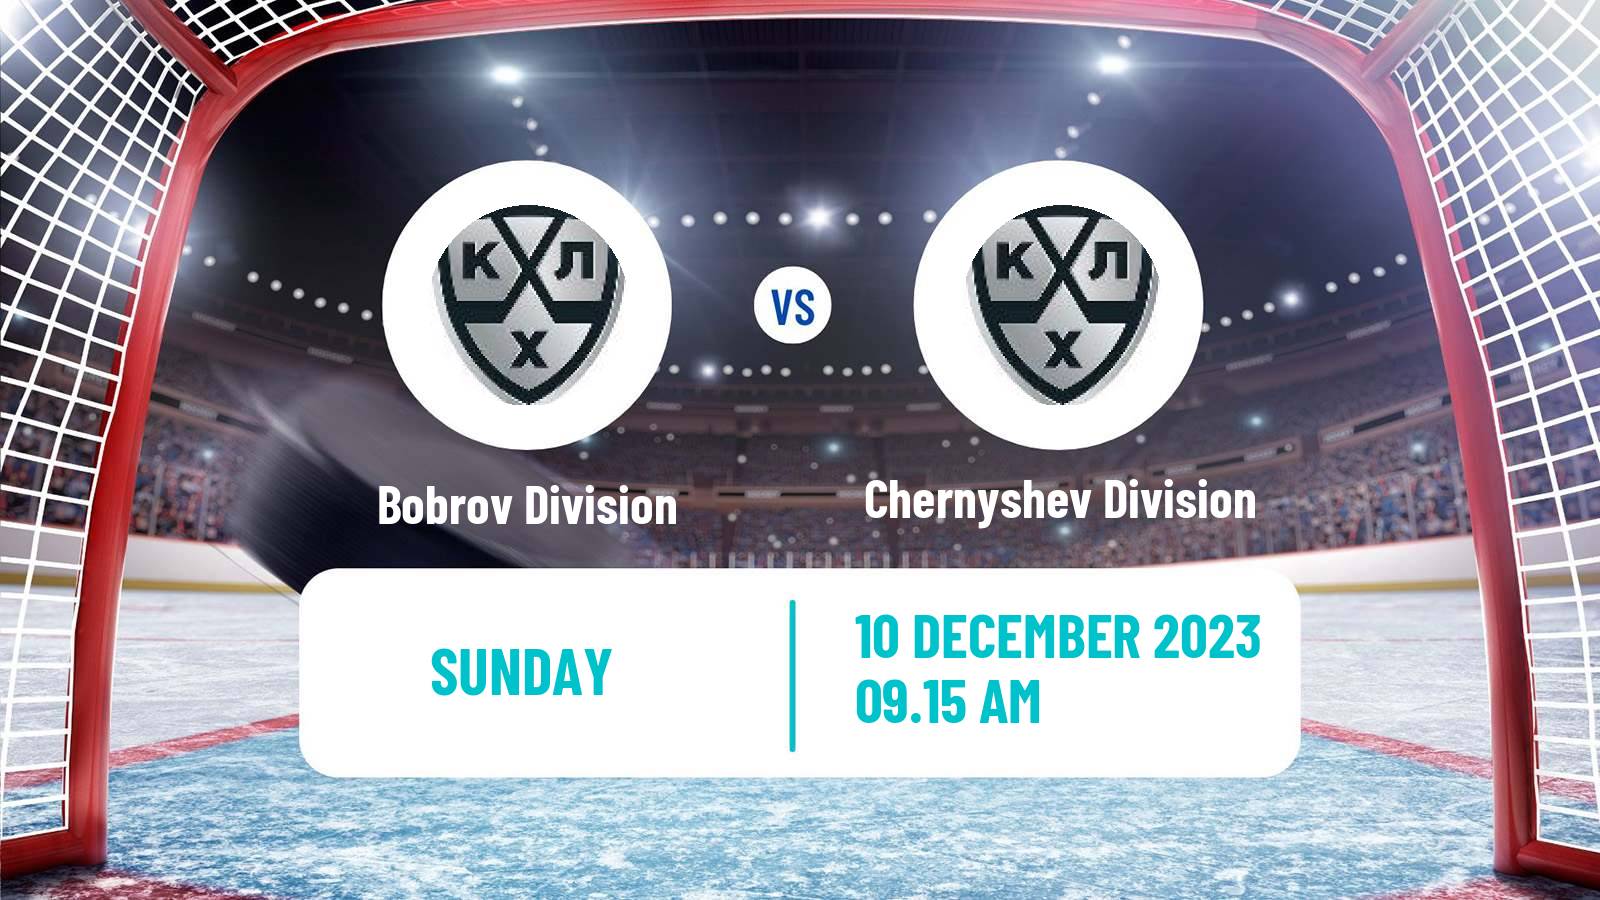 Hockey KHL Bobrov Division - Chernyshev Division